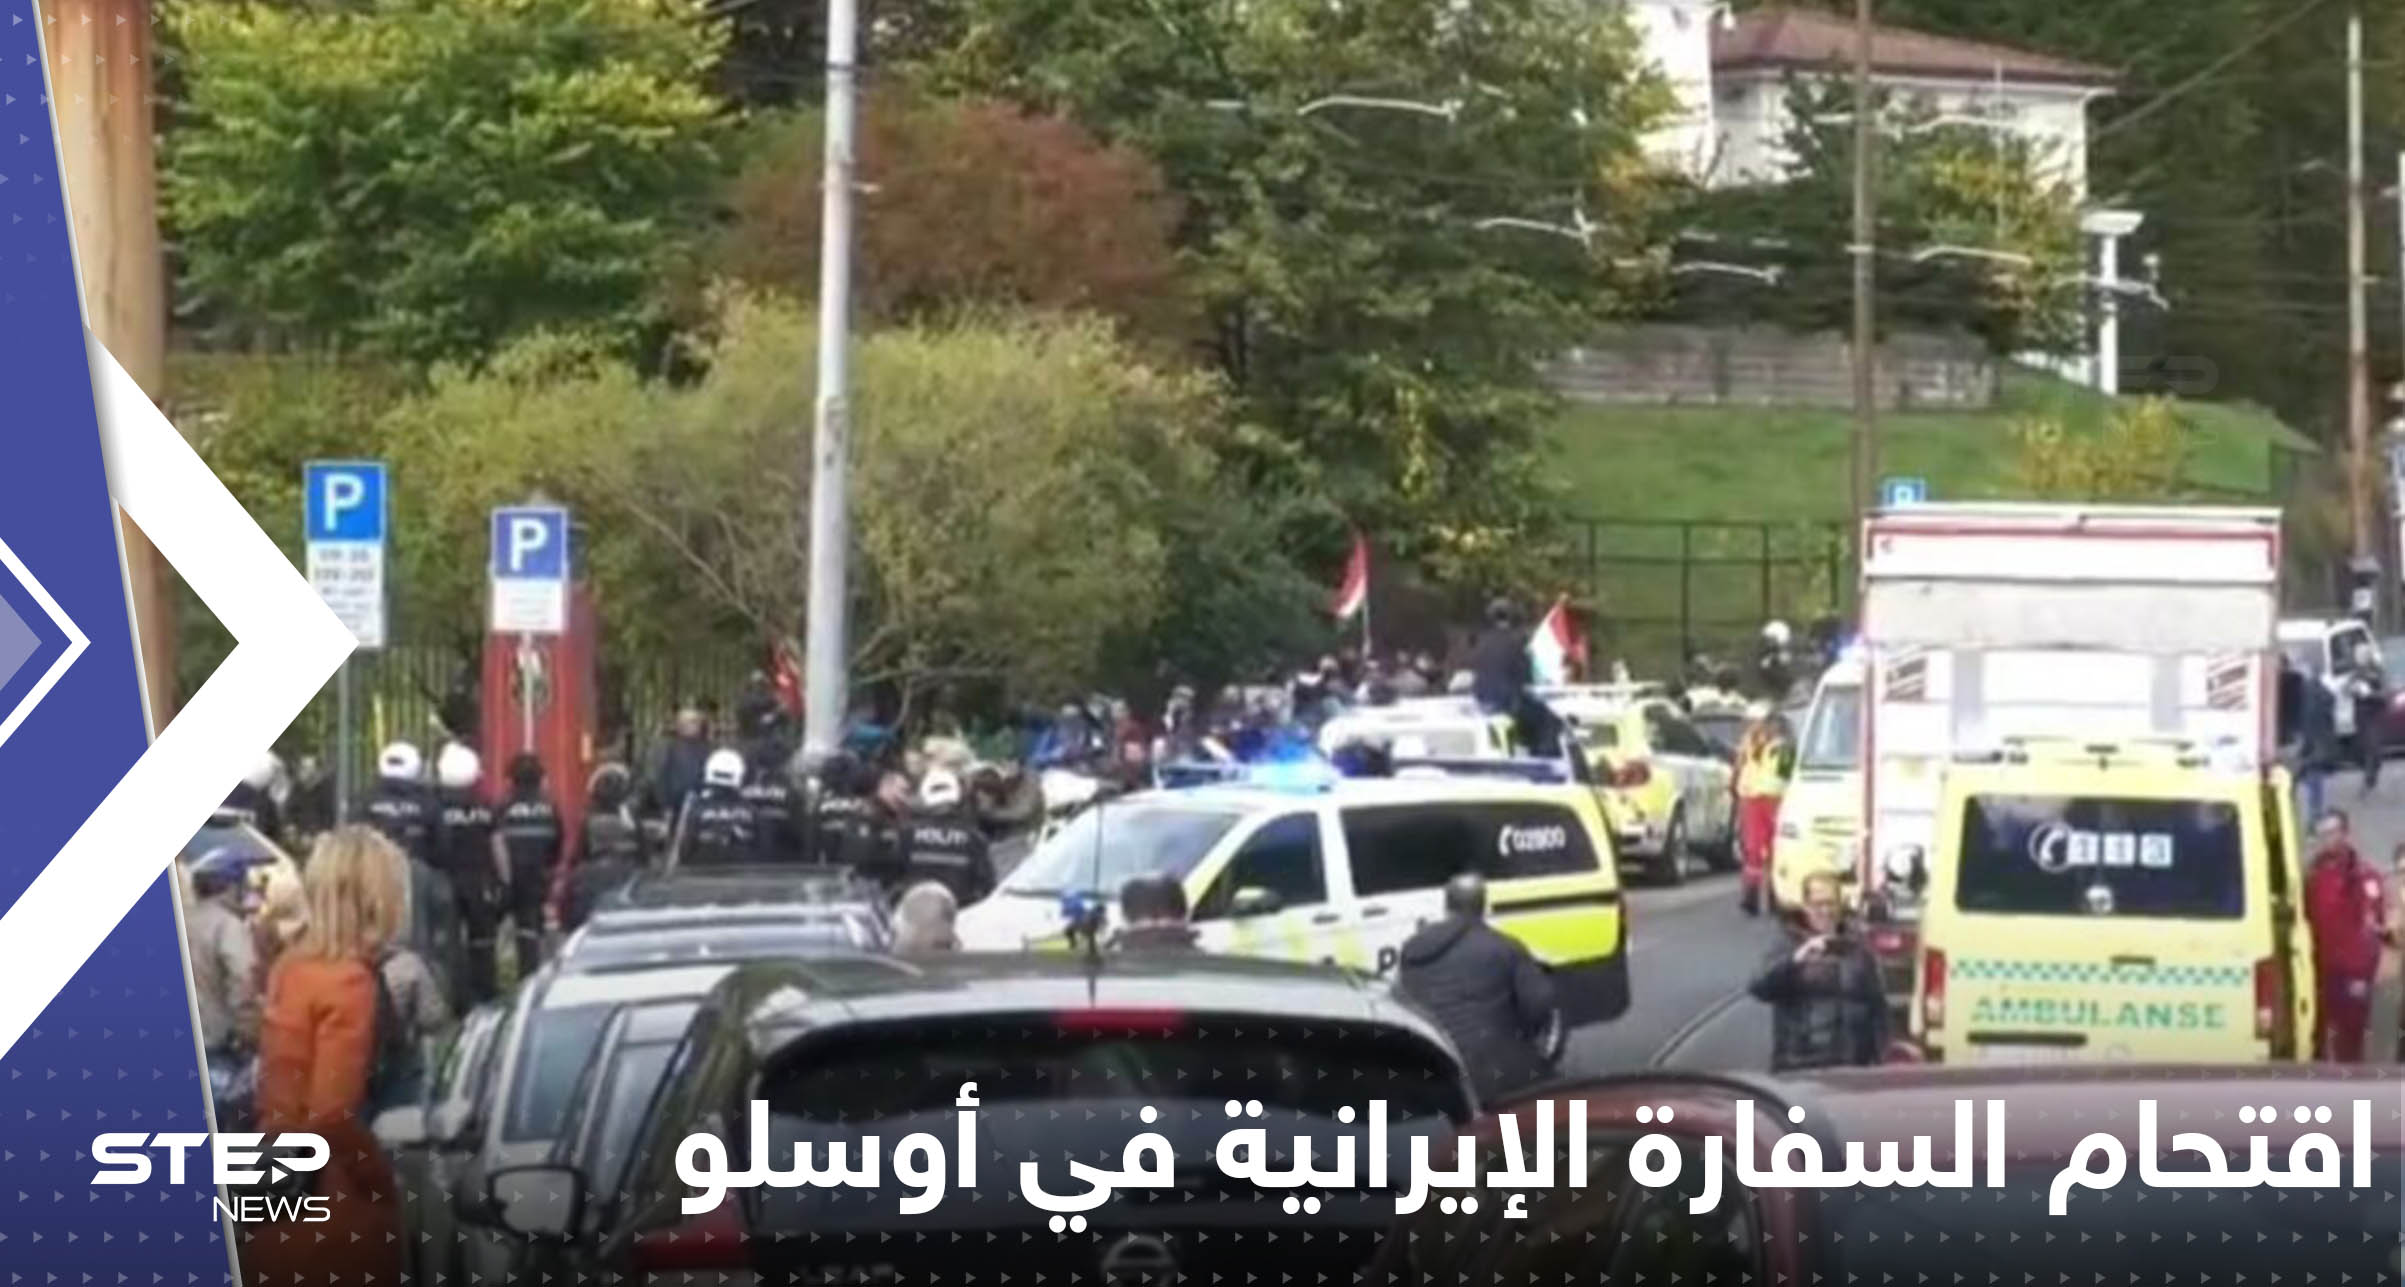 محاولة اقتحام السفارة الإيرانية في أوسلو